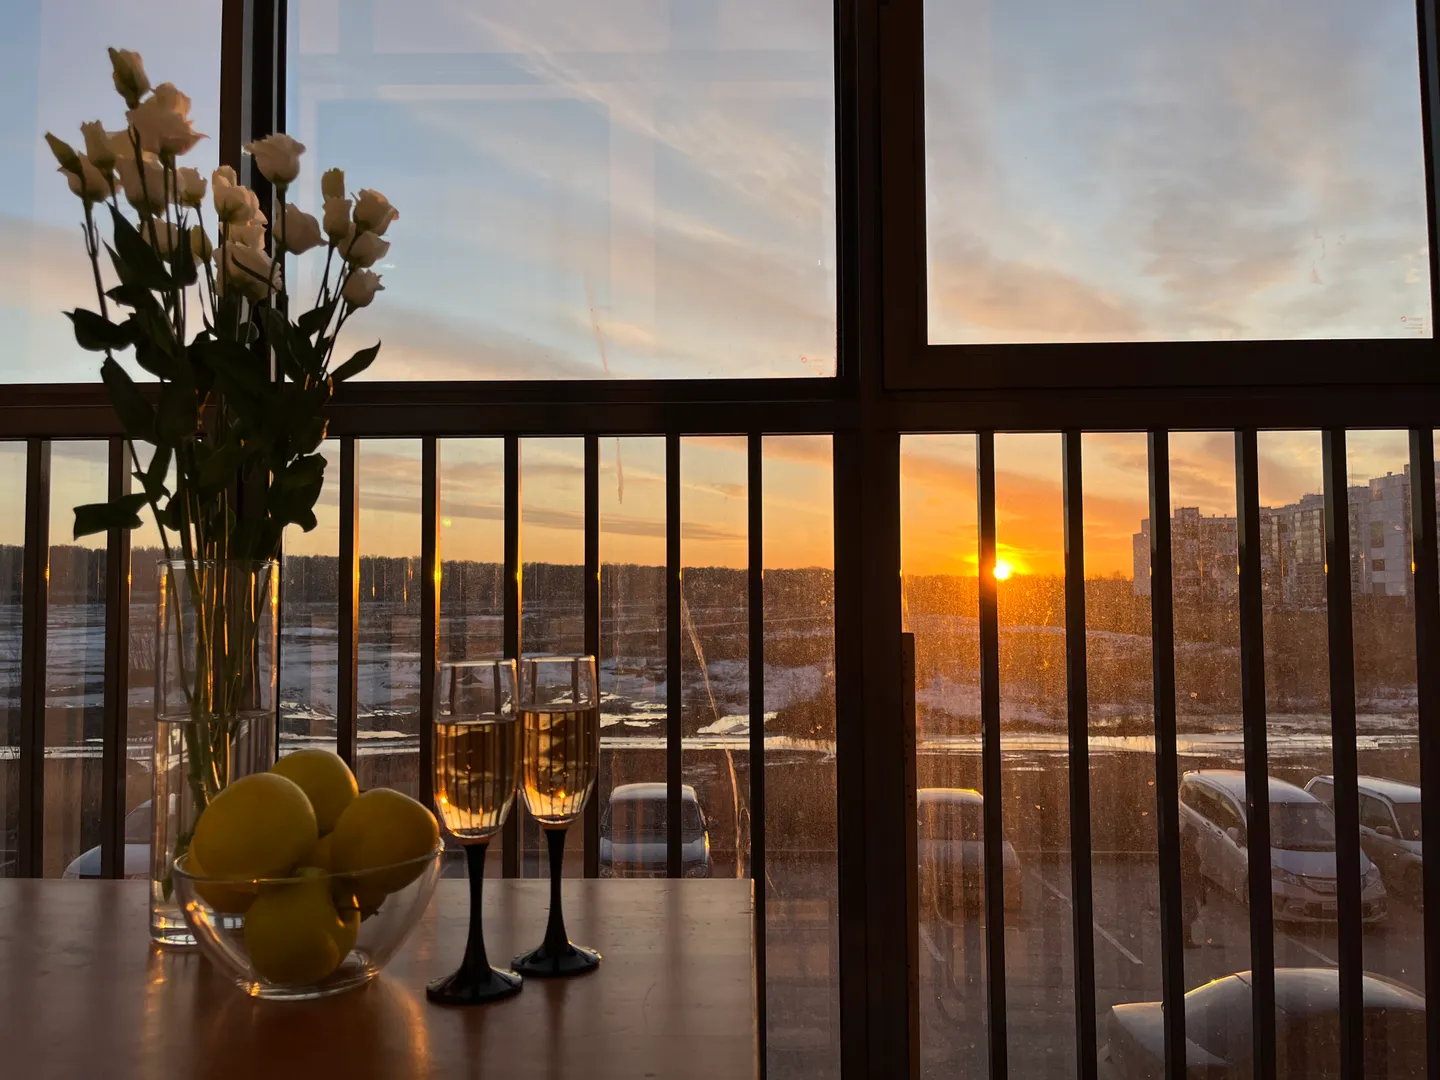 На балконе с панорамными окнами можно отдохнуть от дневной суеты и насладится закатом